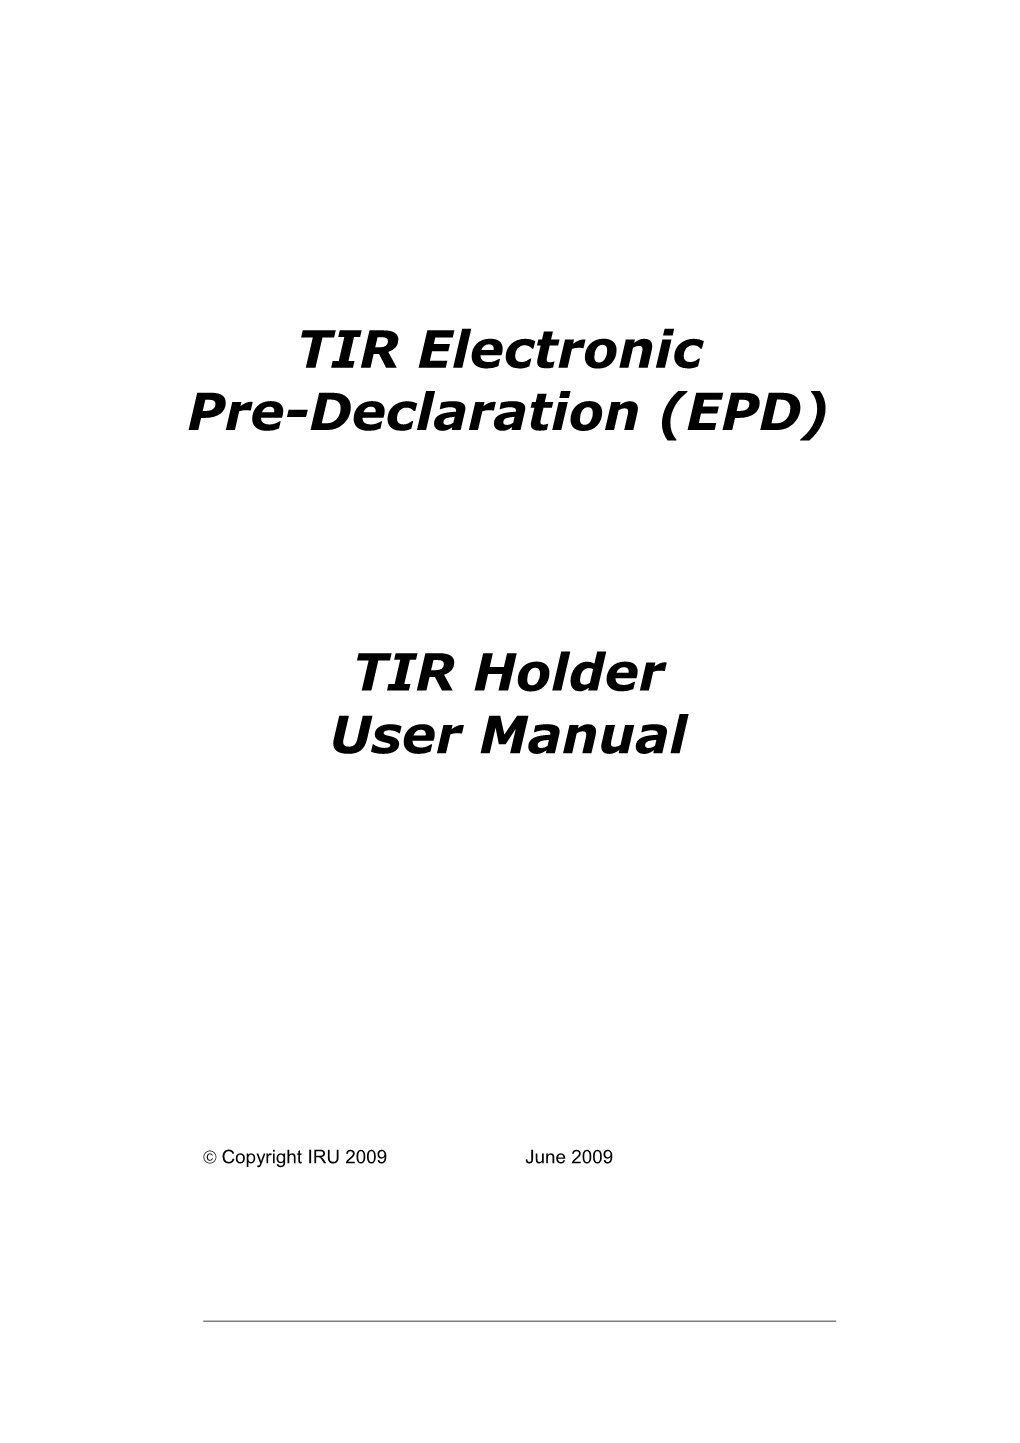 TIR Holder User Manual